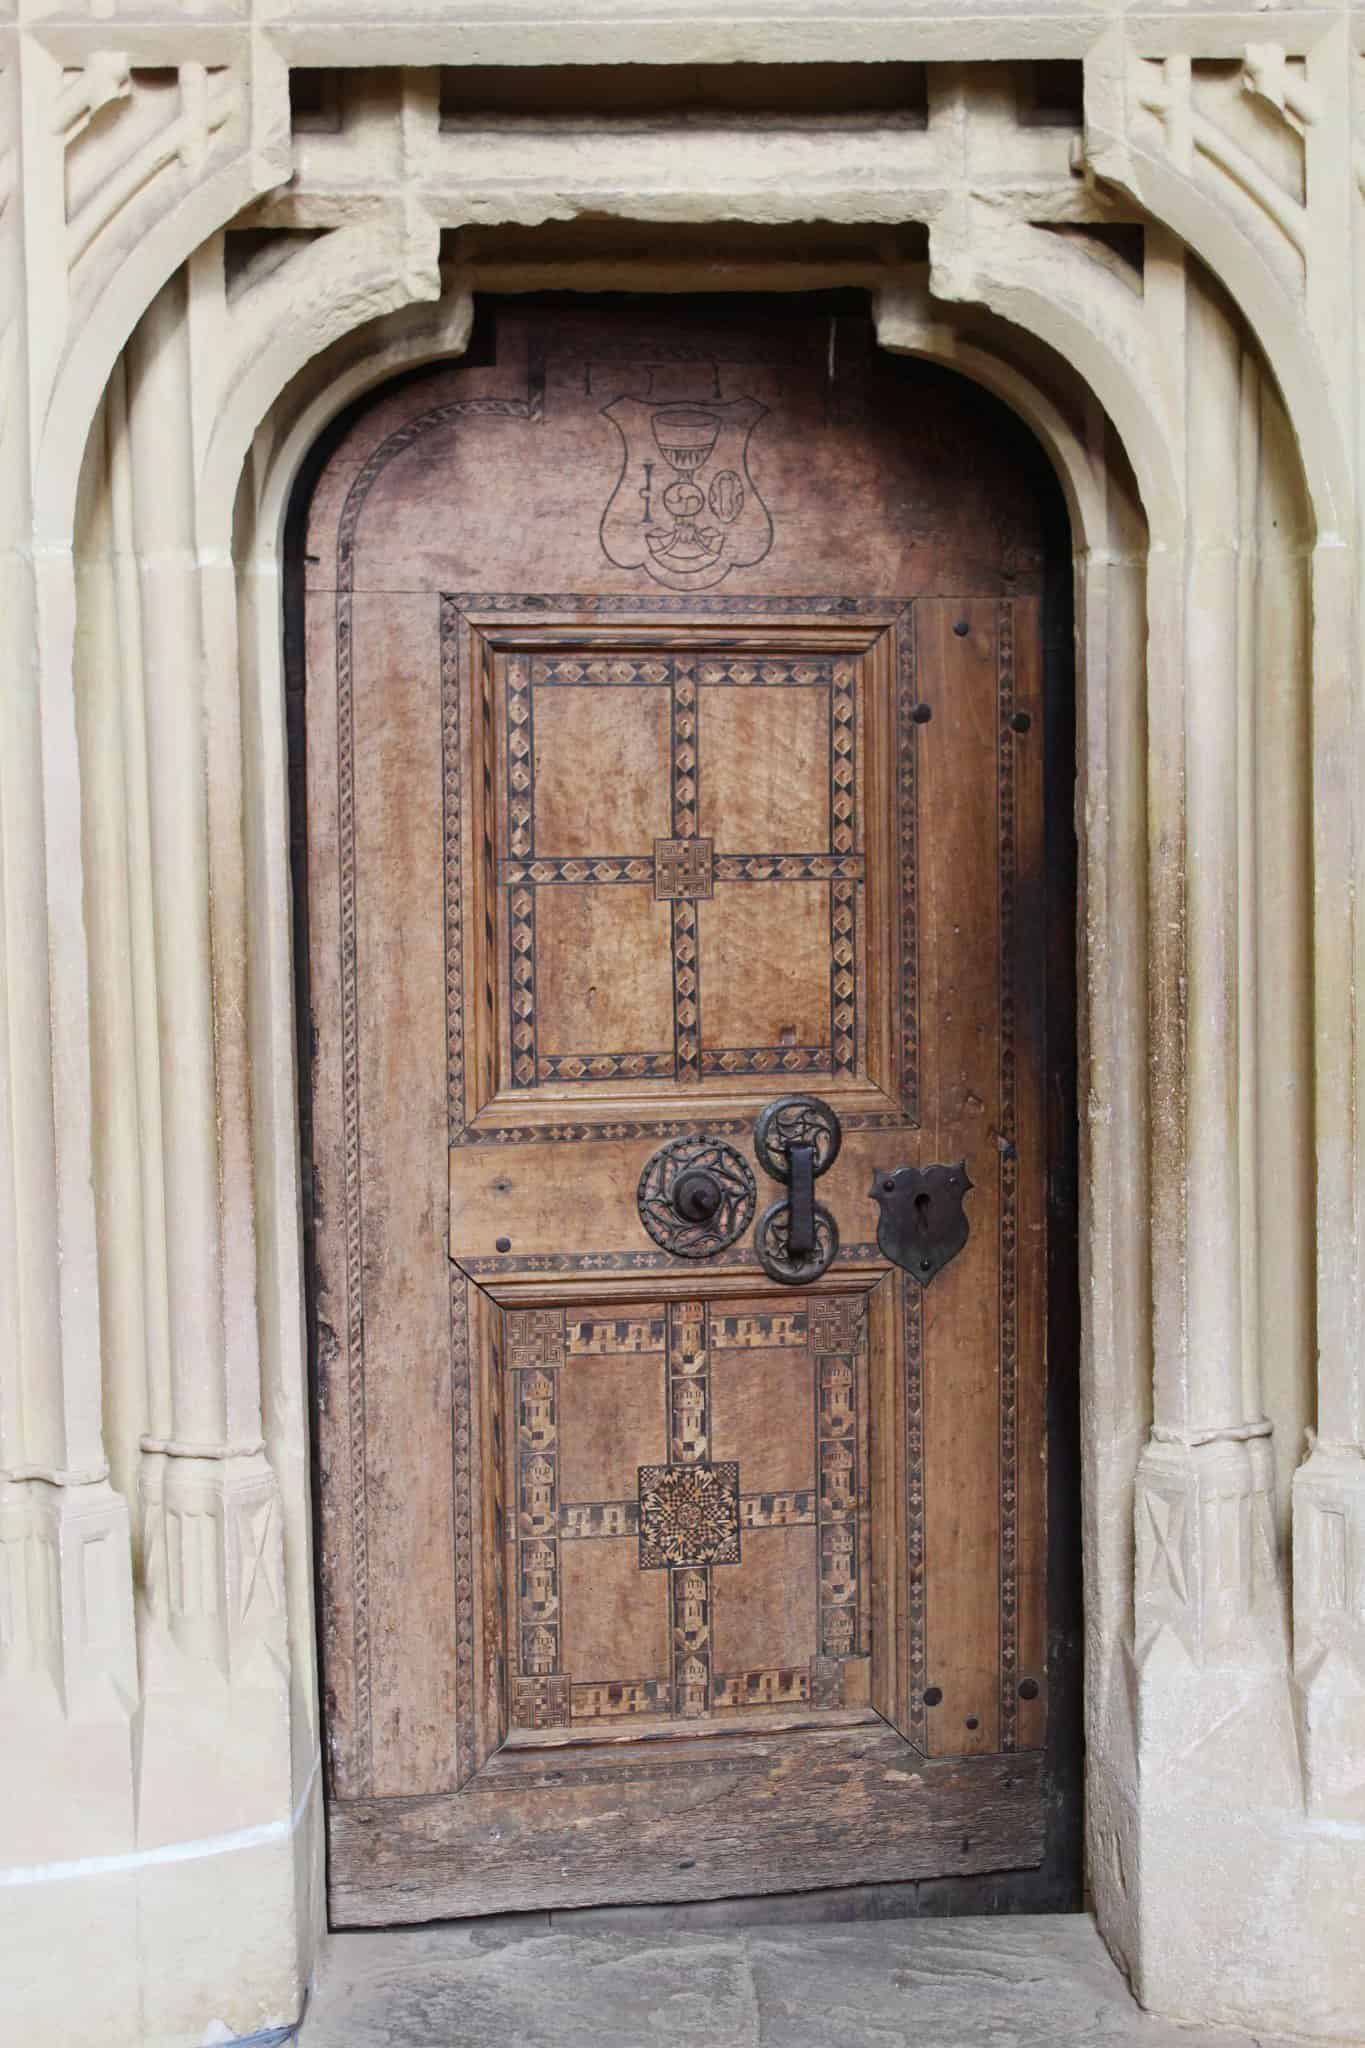 ușa bisericii fortificate din biertan, o bijuterie medievală care a uimit lumea (foto)